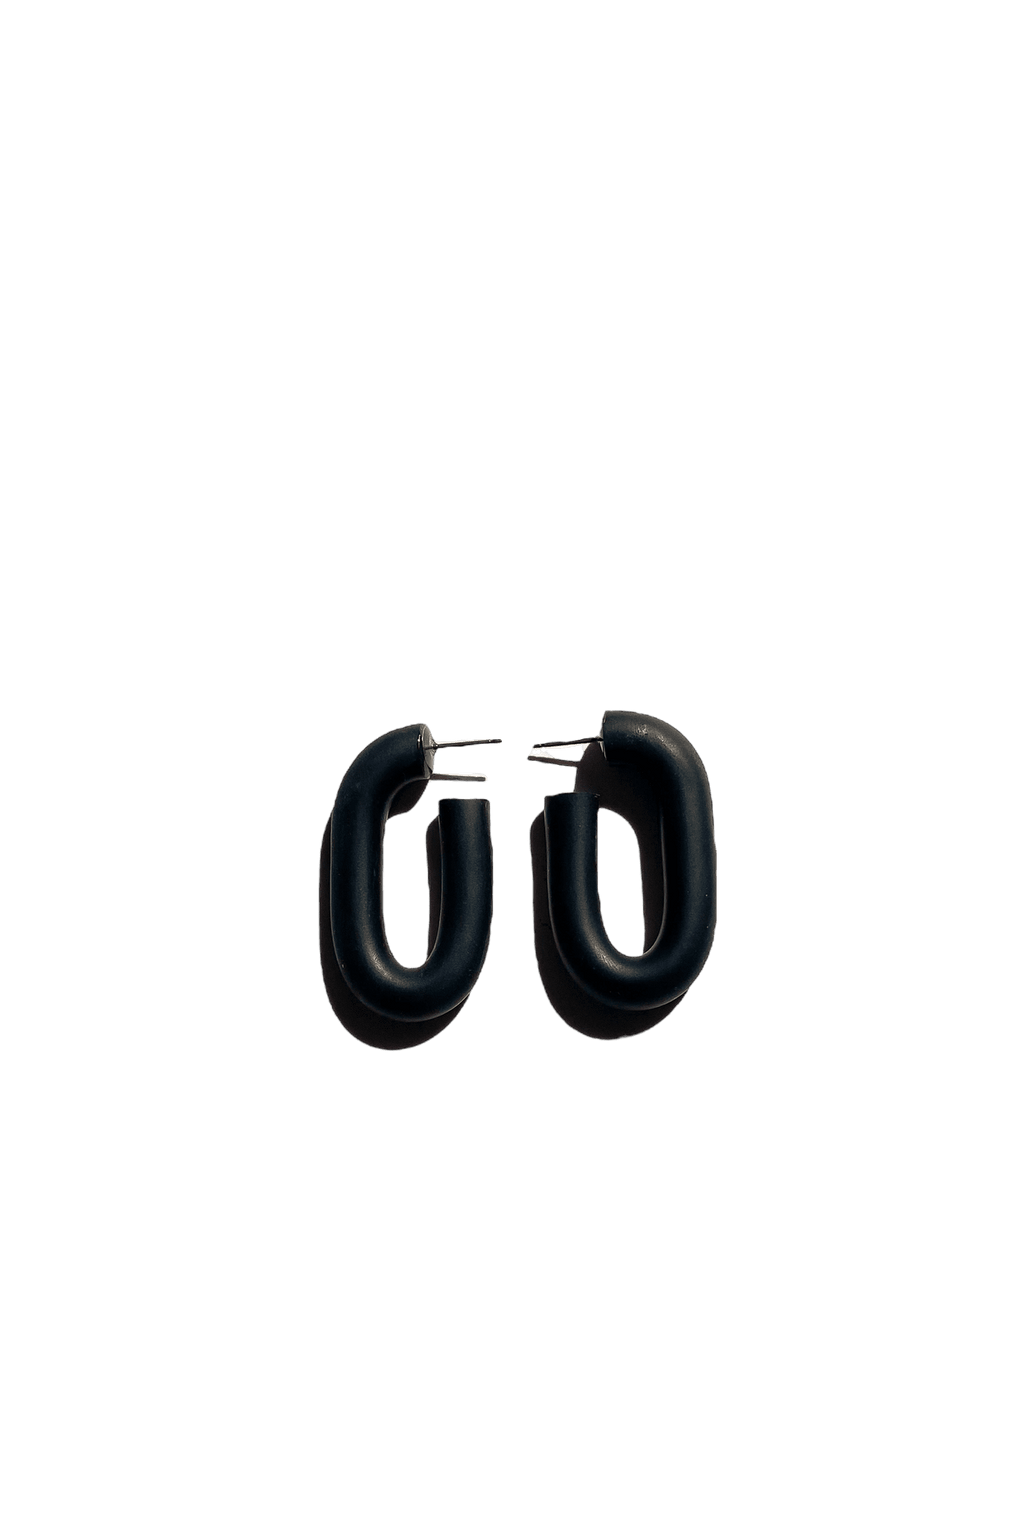 Sigfus Rectangle Hoop Earrings - Small Black | Phoenix General